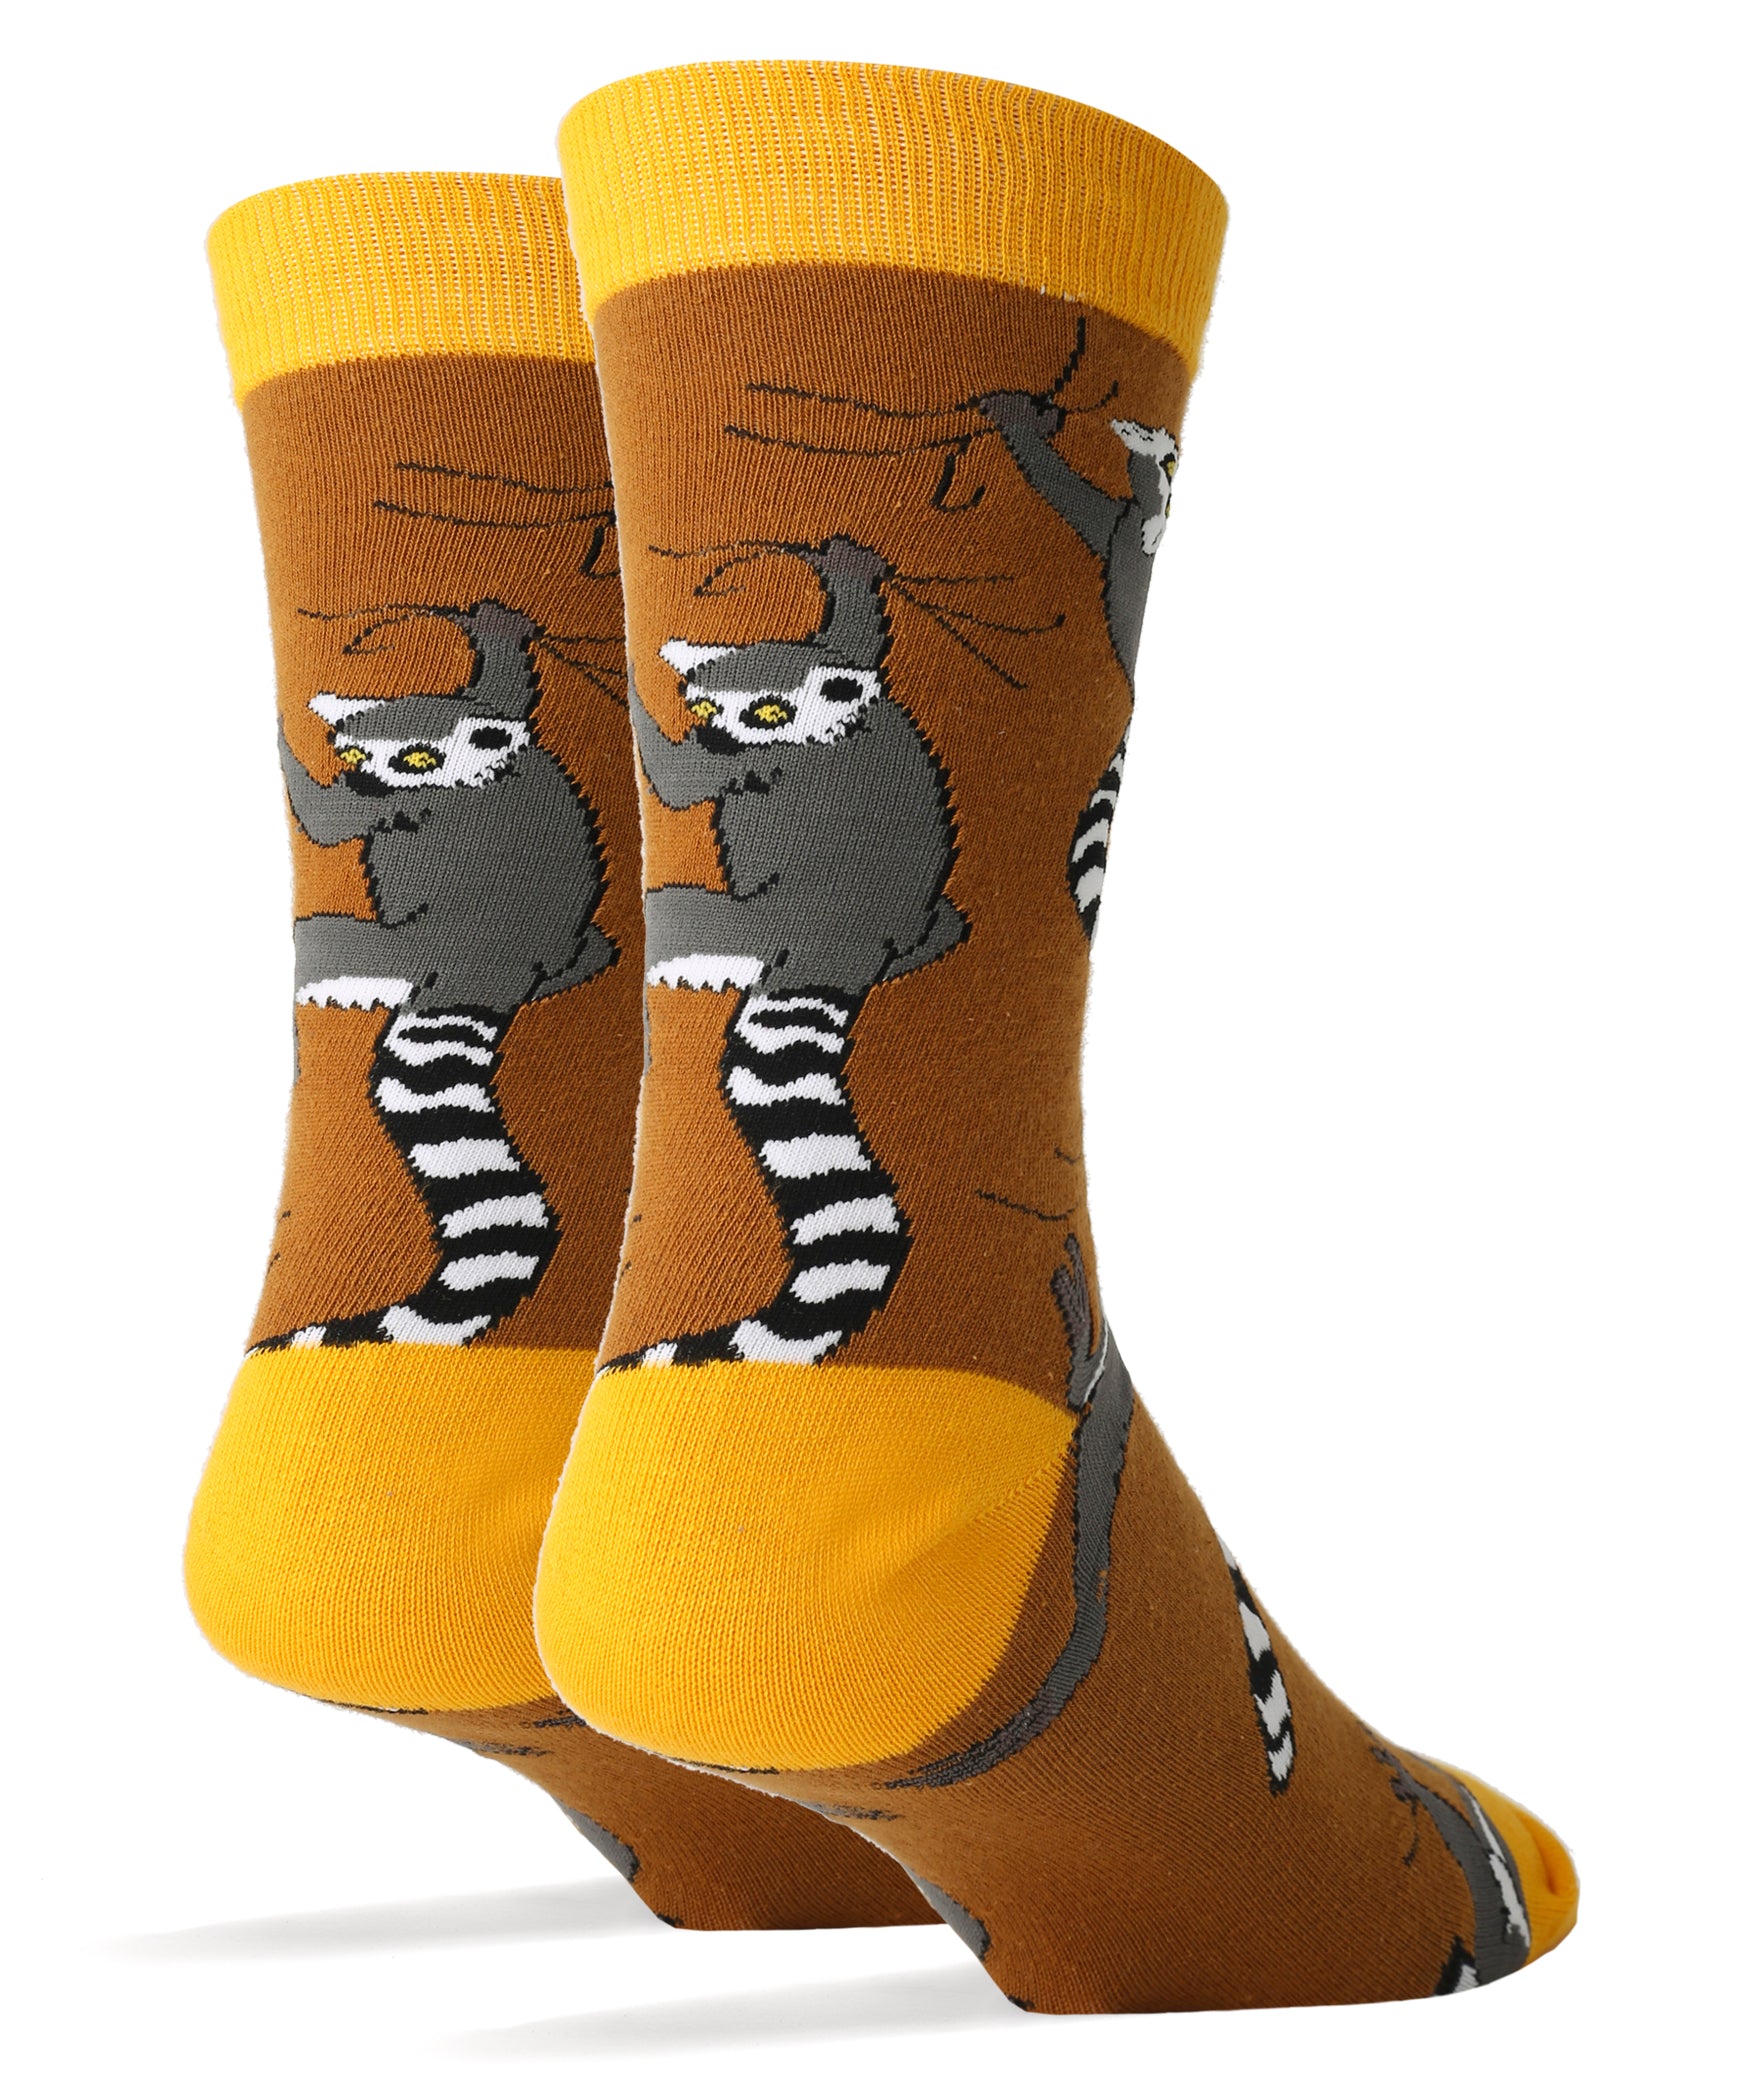 Lemur Buds - Oooh Yeah Socks